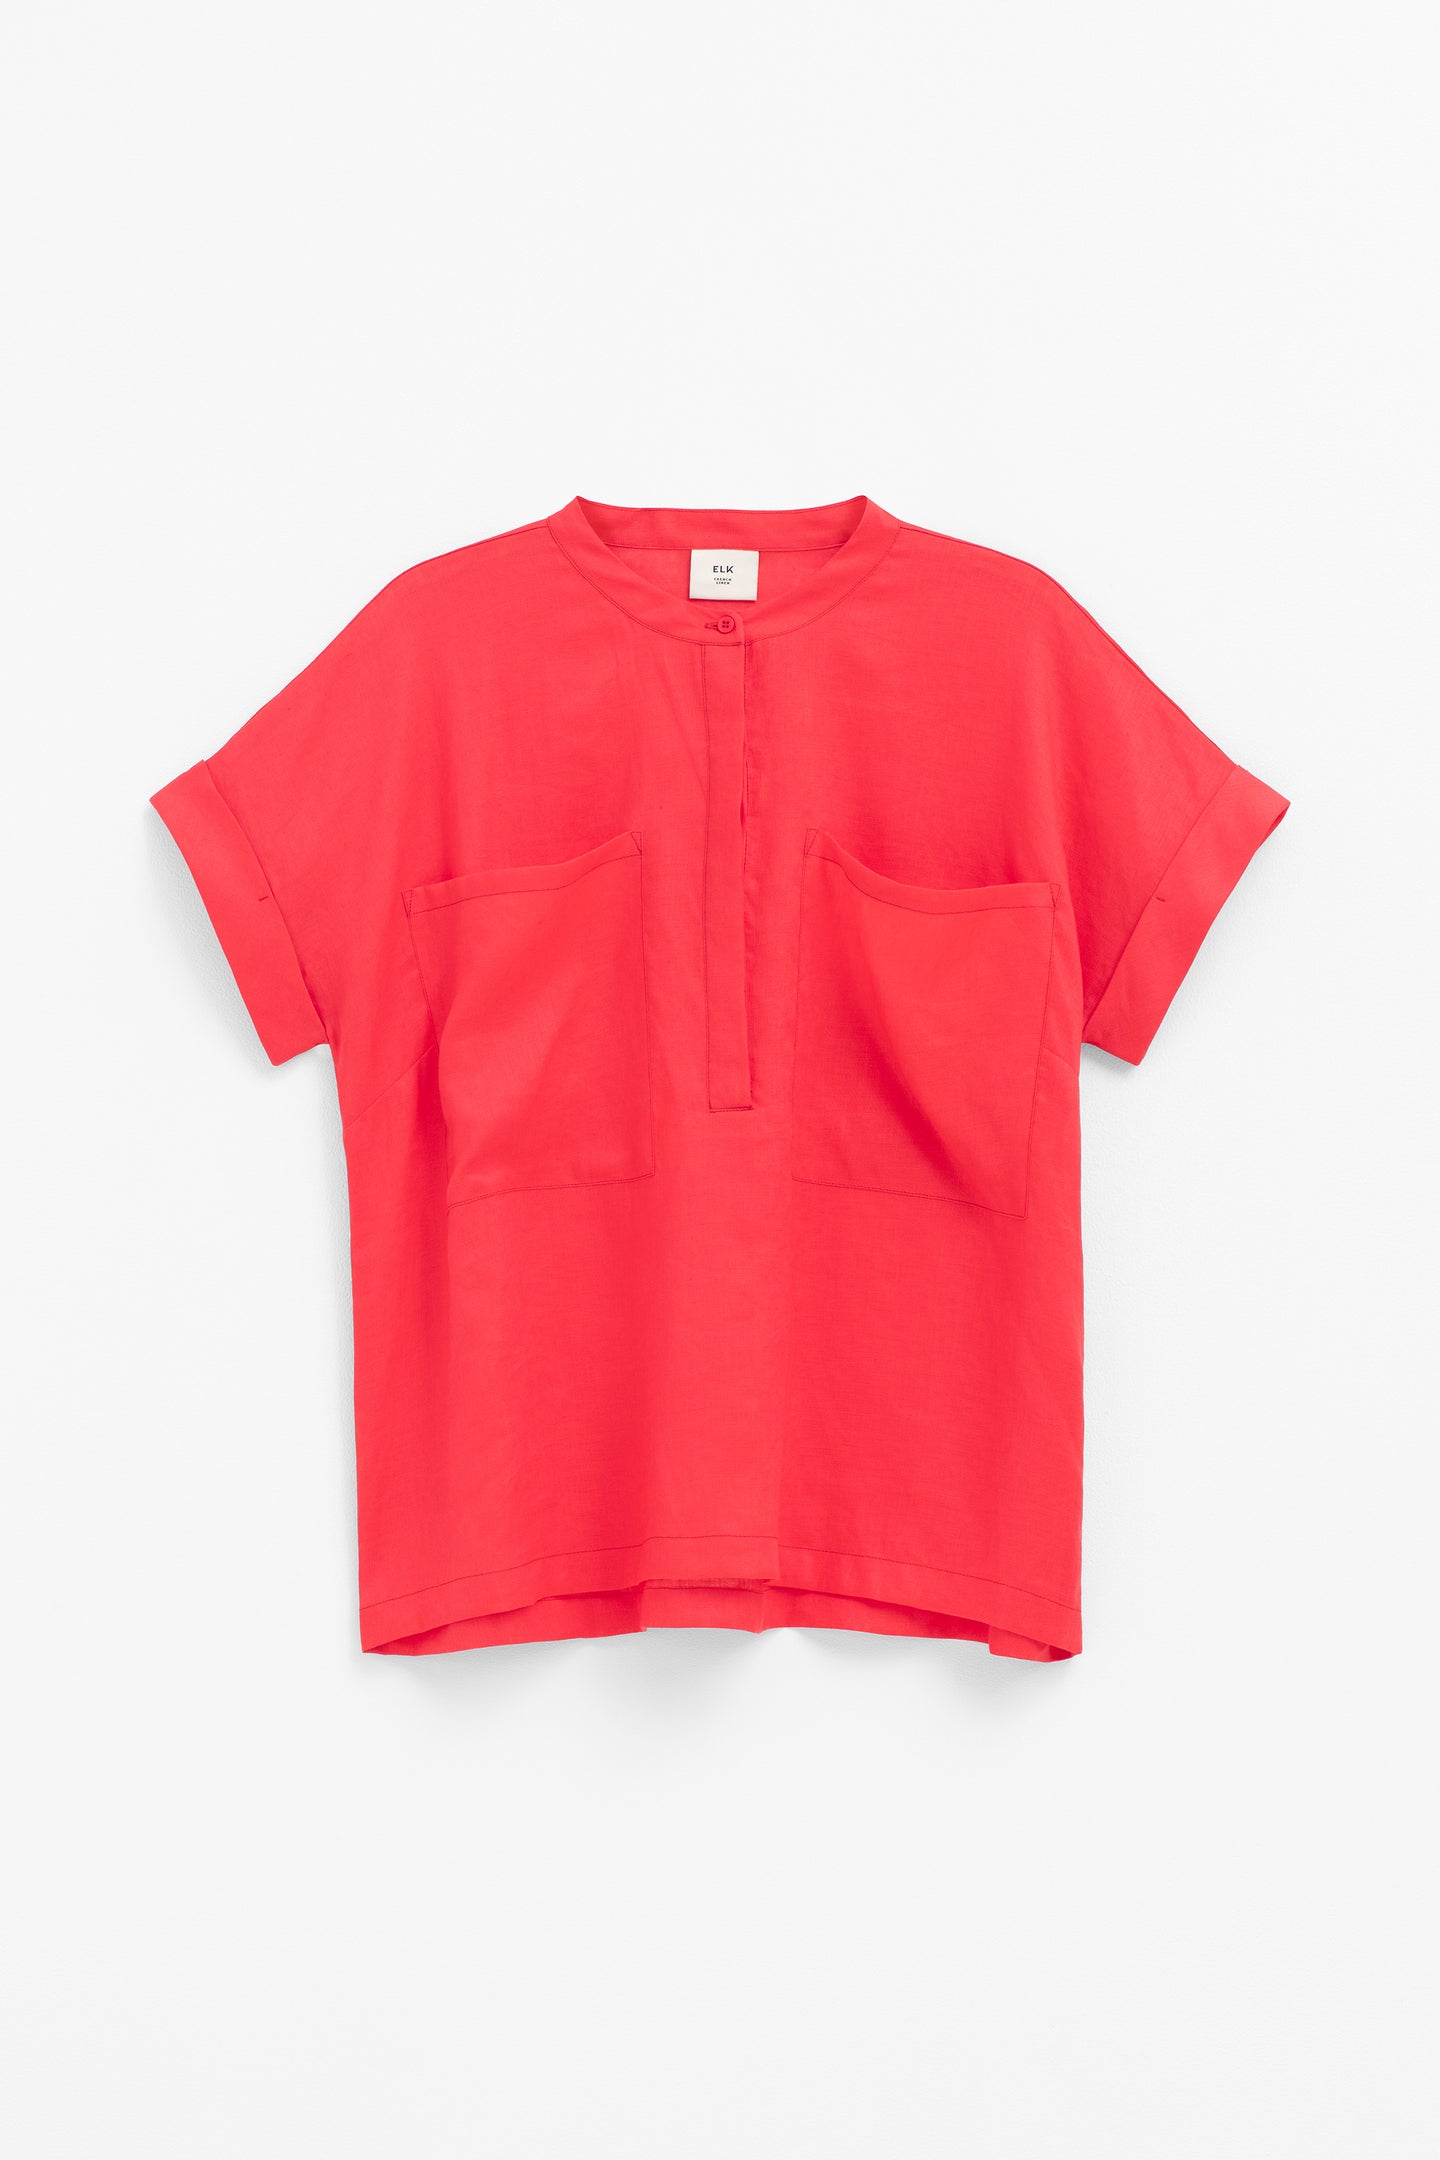 Mies Shirt - Coral Pink